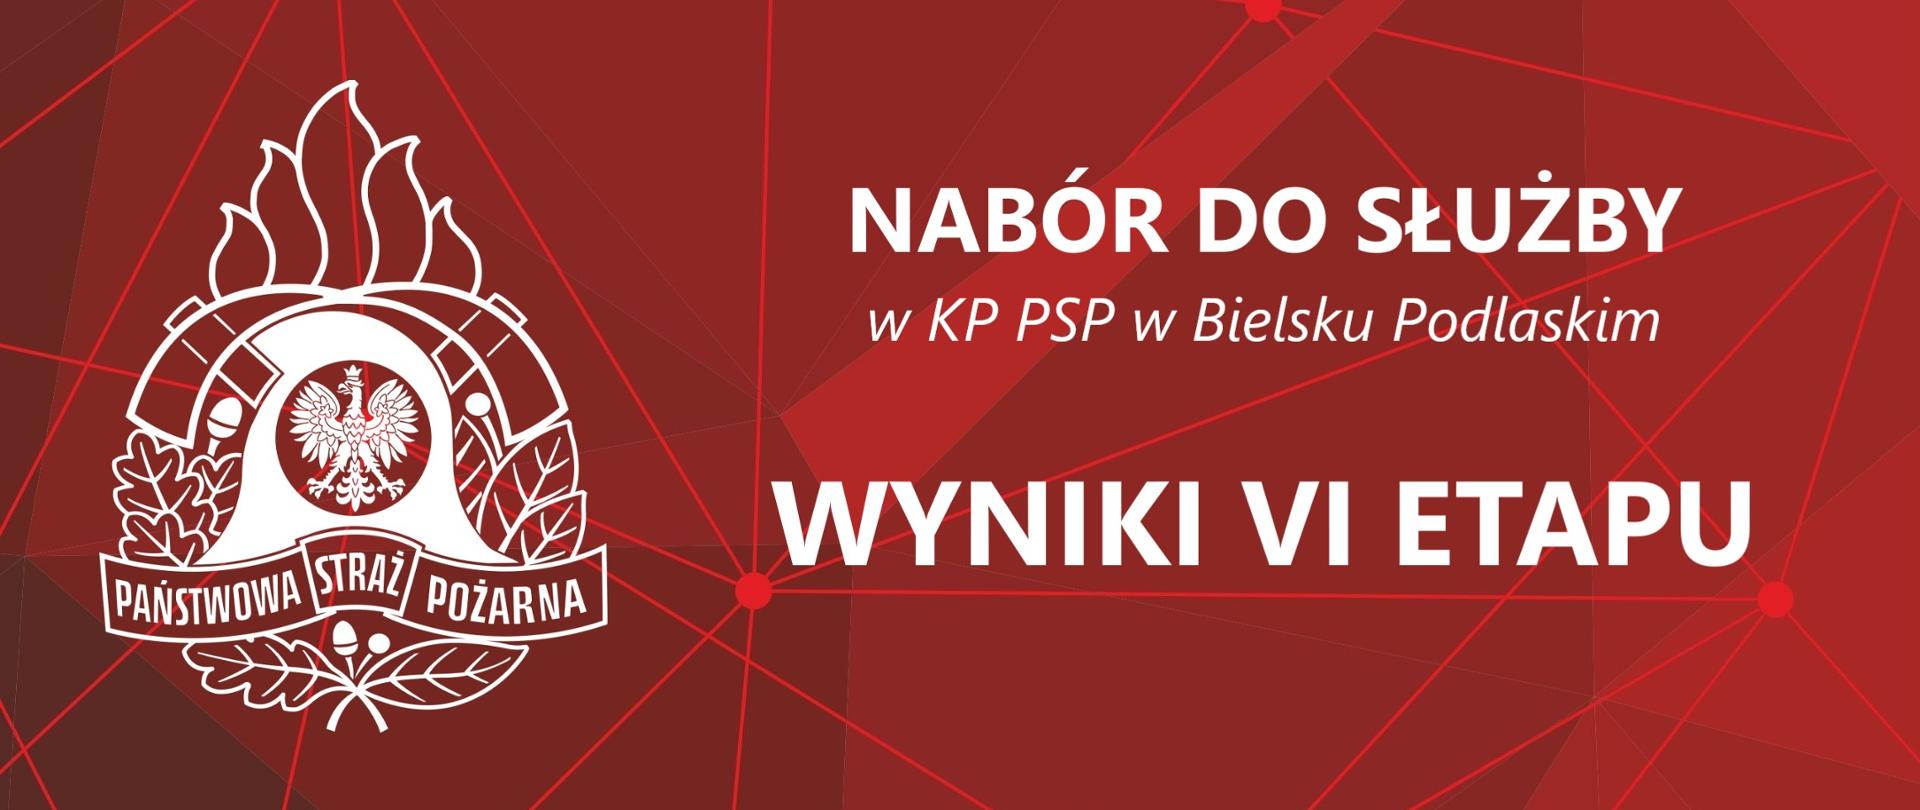 Baner z logo PSP i Napisem: Nabór do służby w KP PSP w Bielsku Podlaskim - Wyniki VI etapu